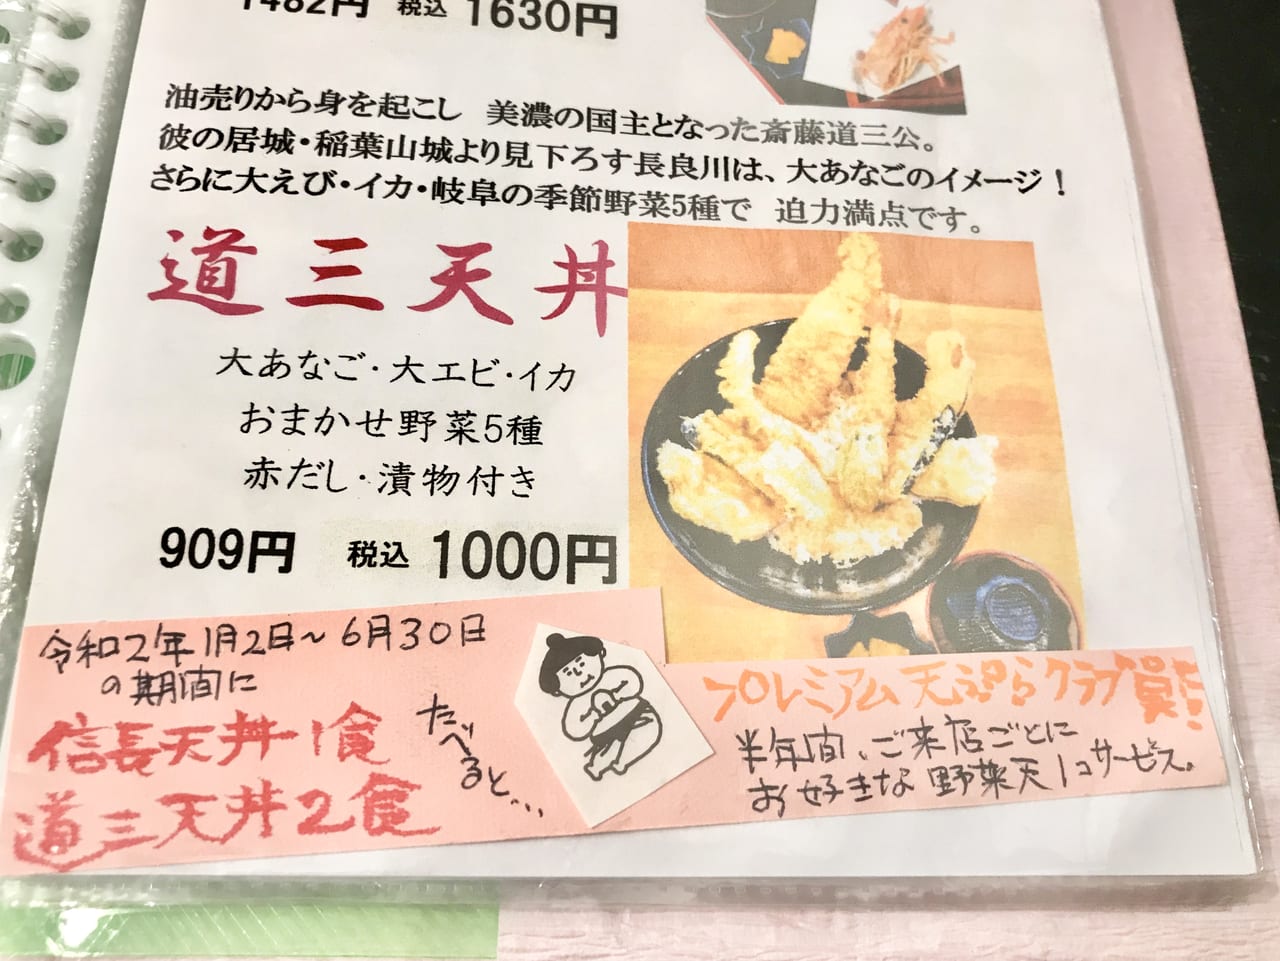 【岐阜市】 地元愛あり、美味しい天ぷらありの 『柳ヶ瀬 天ぷらクラブ』